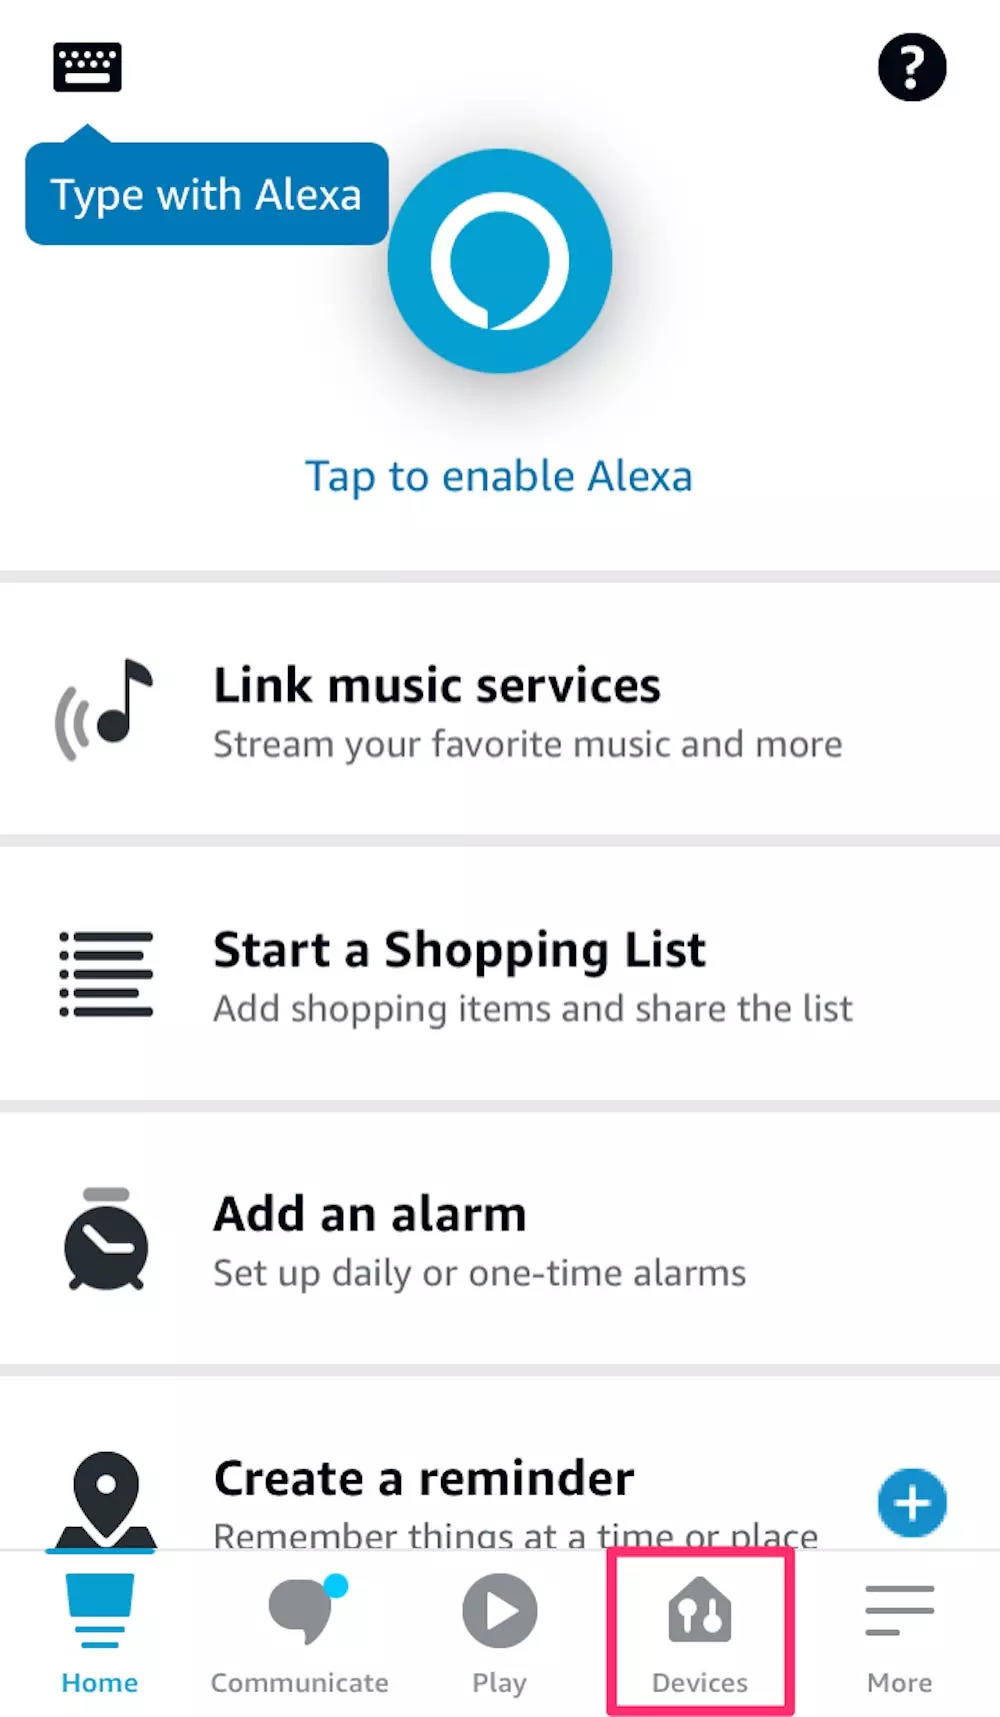 Cum îmi conectez telefonul la Alexa fără aplicație?